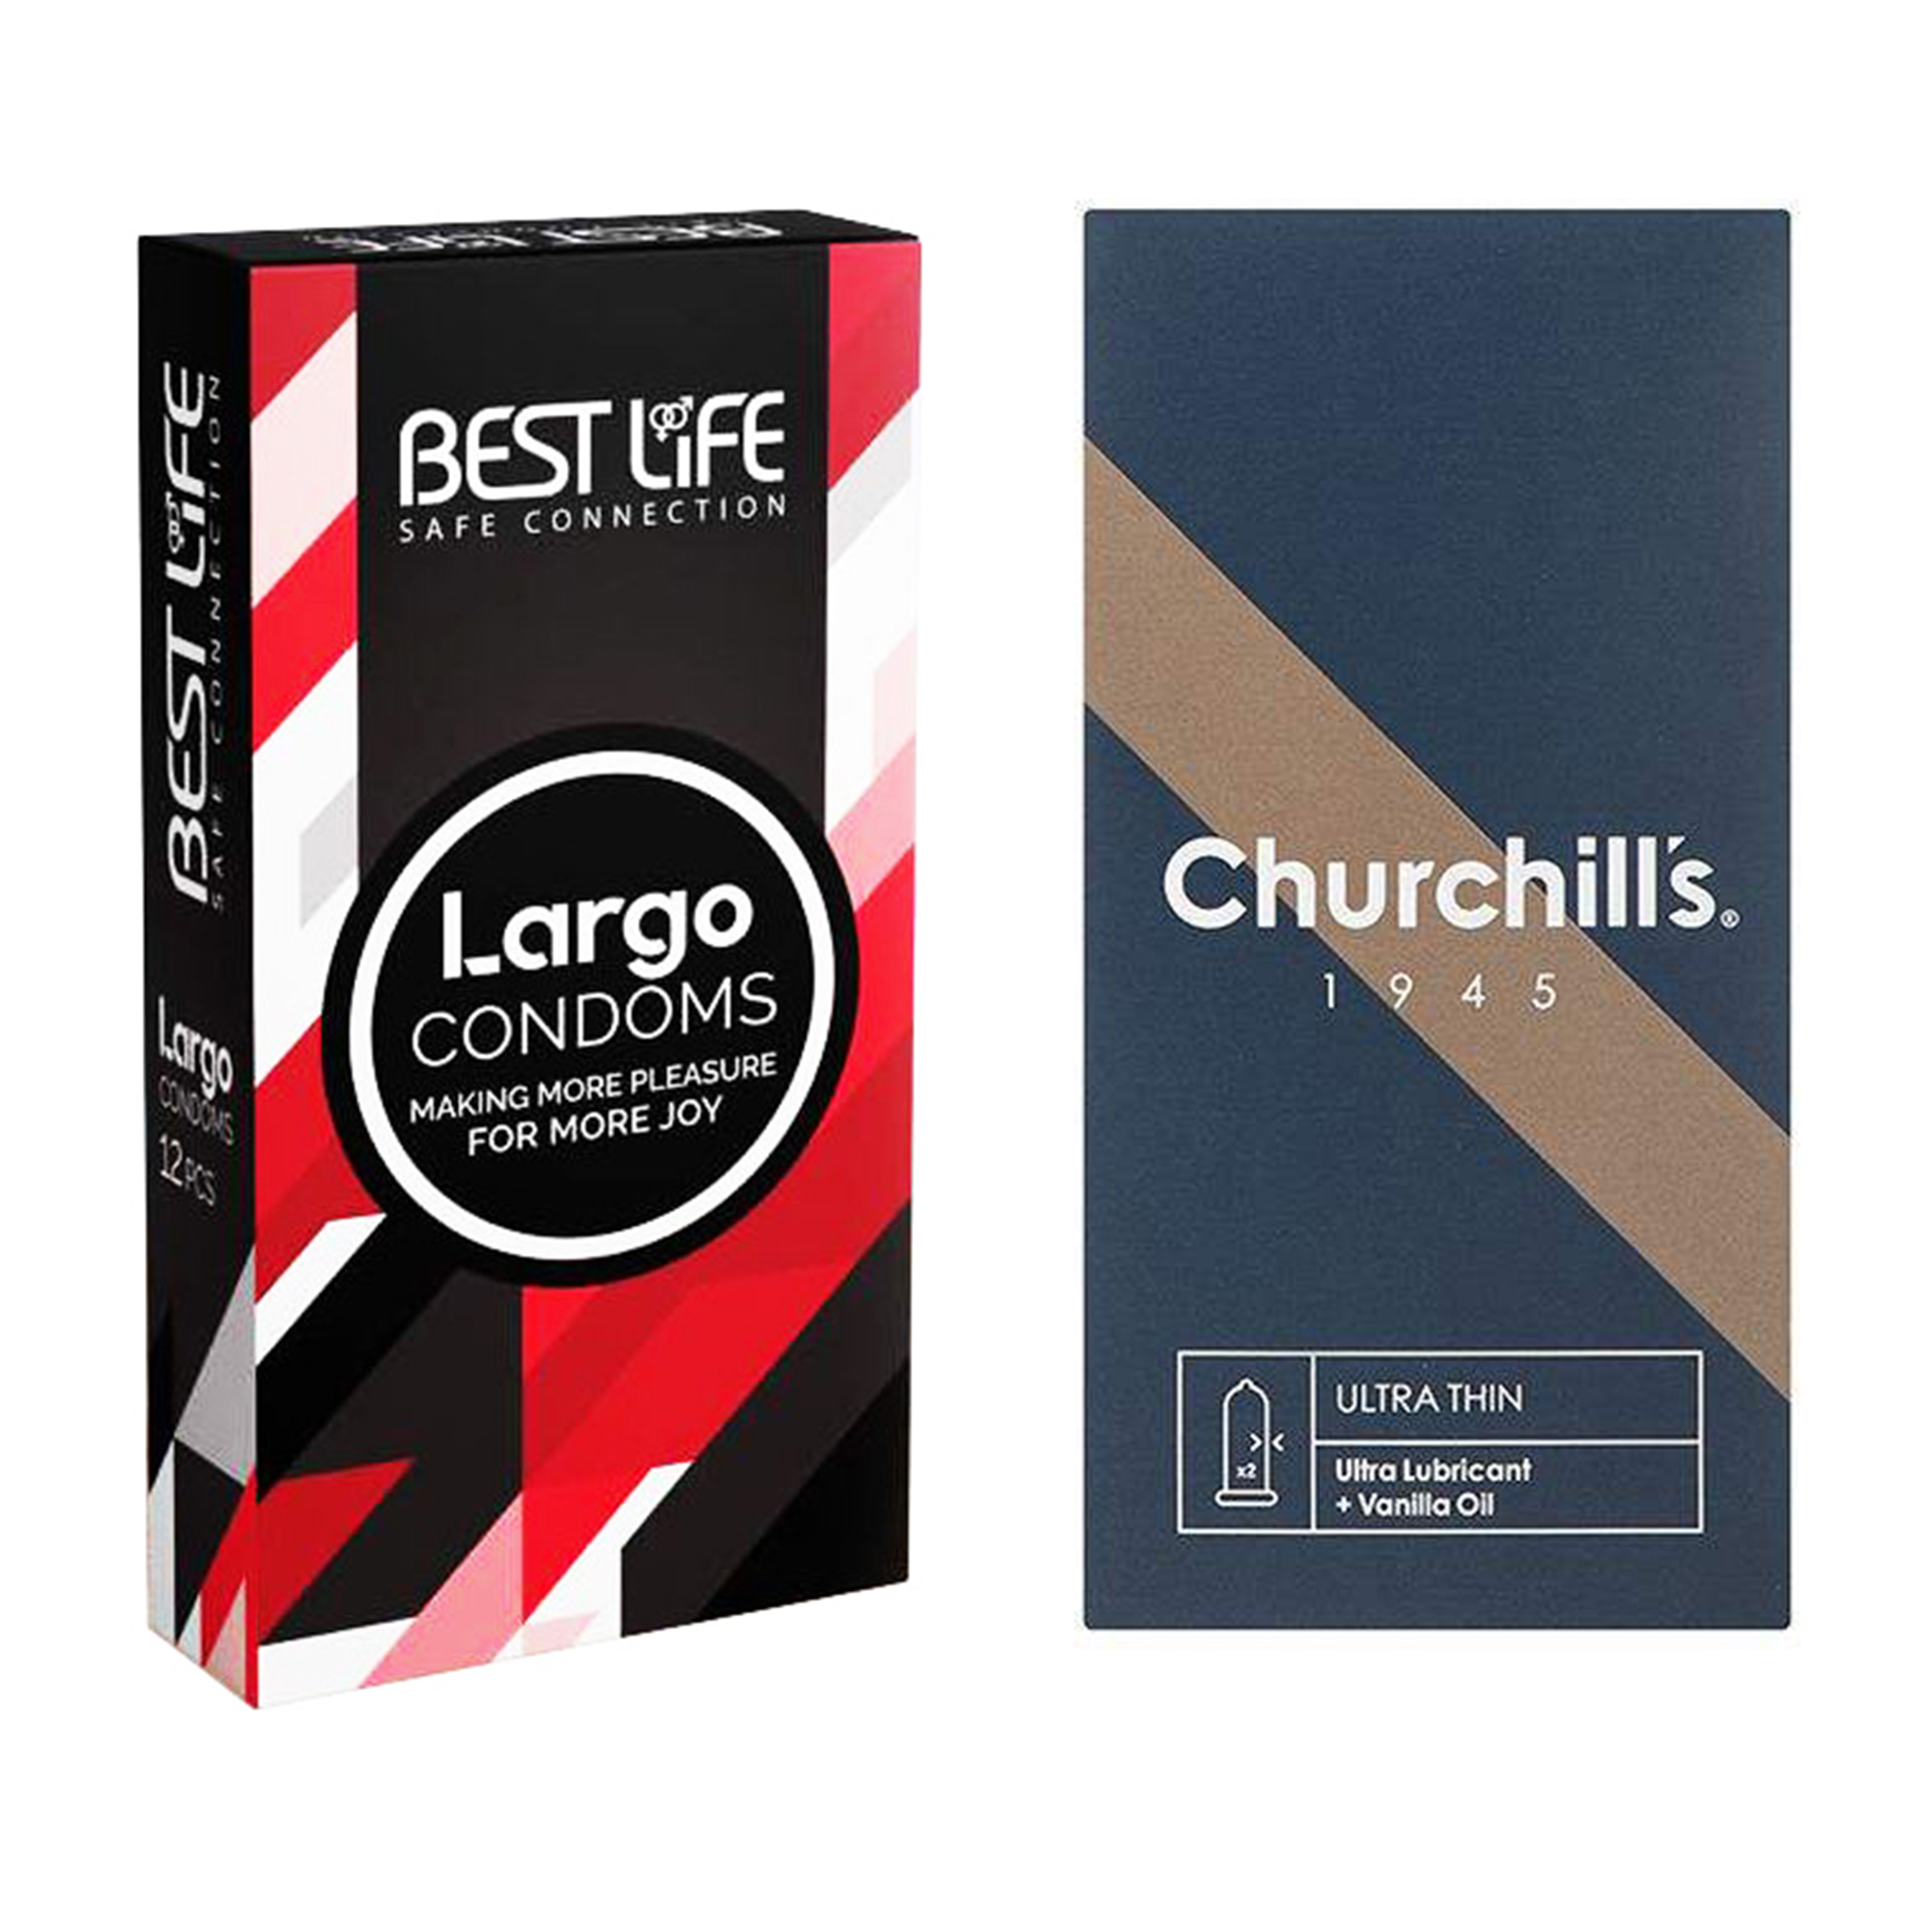 کاندوم چرچیلز مدل Ultra Thin بسته 12 عددی به همراه کاندوم بست لایف مدل Largo بسته 12 عددی